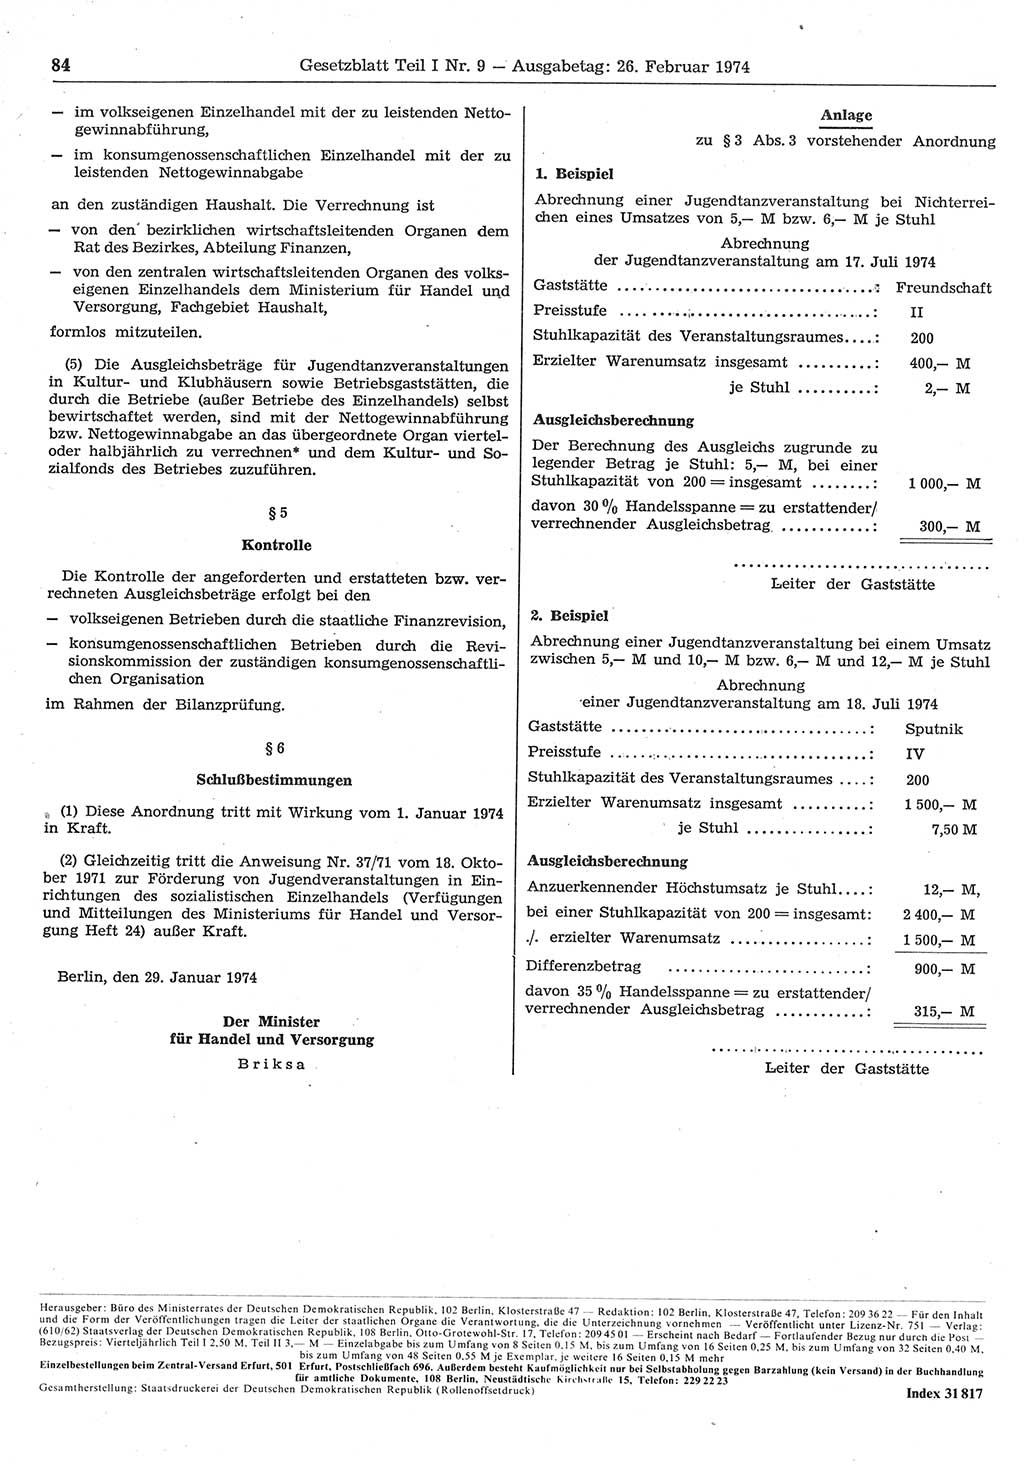 Gesetzblatt (GBl.) der Deutschen Demokratischen Republik (DDR) Teil Ⅰ 1974, Seite 84 (GBl. DDR Ⅰ 1974, S. 84)